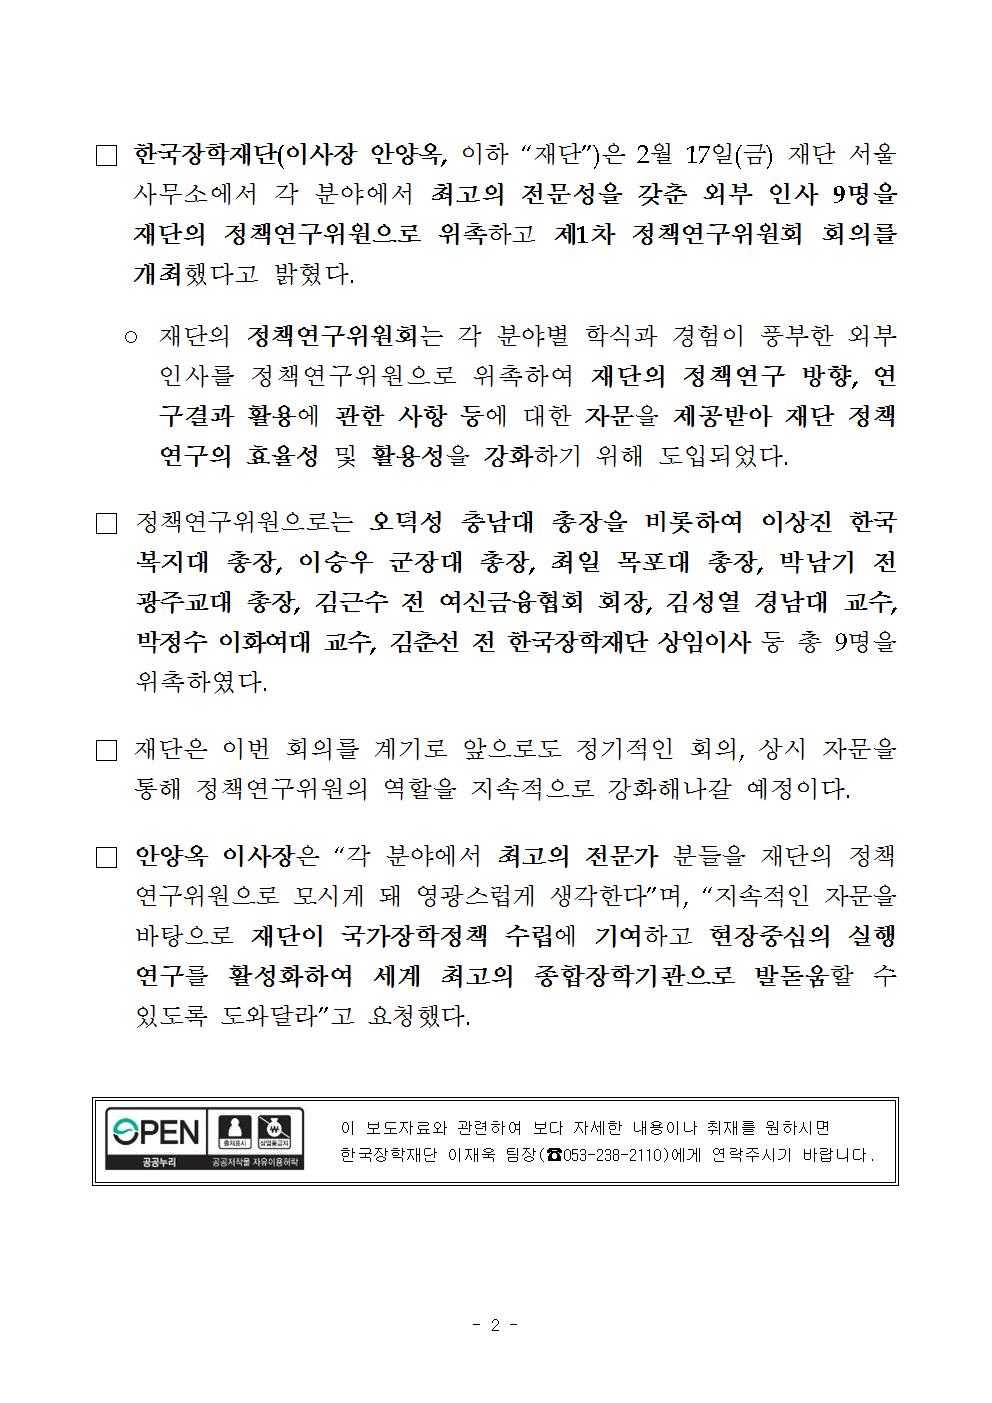 02-17(금)[보도자료]한국장학재단, 정책연구위원 9명 위촉002.jpg